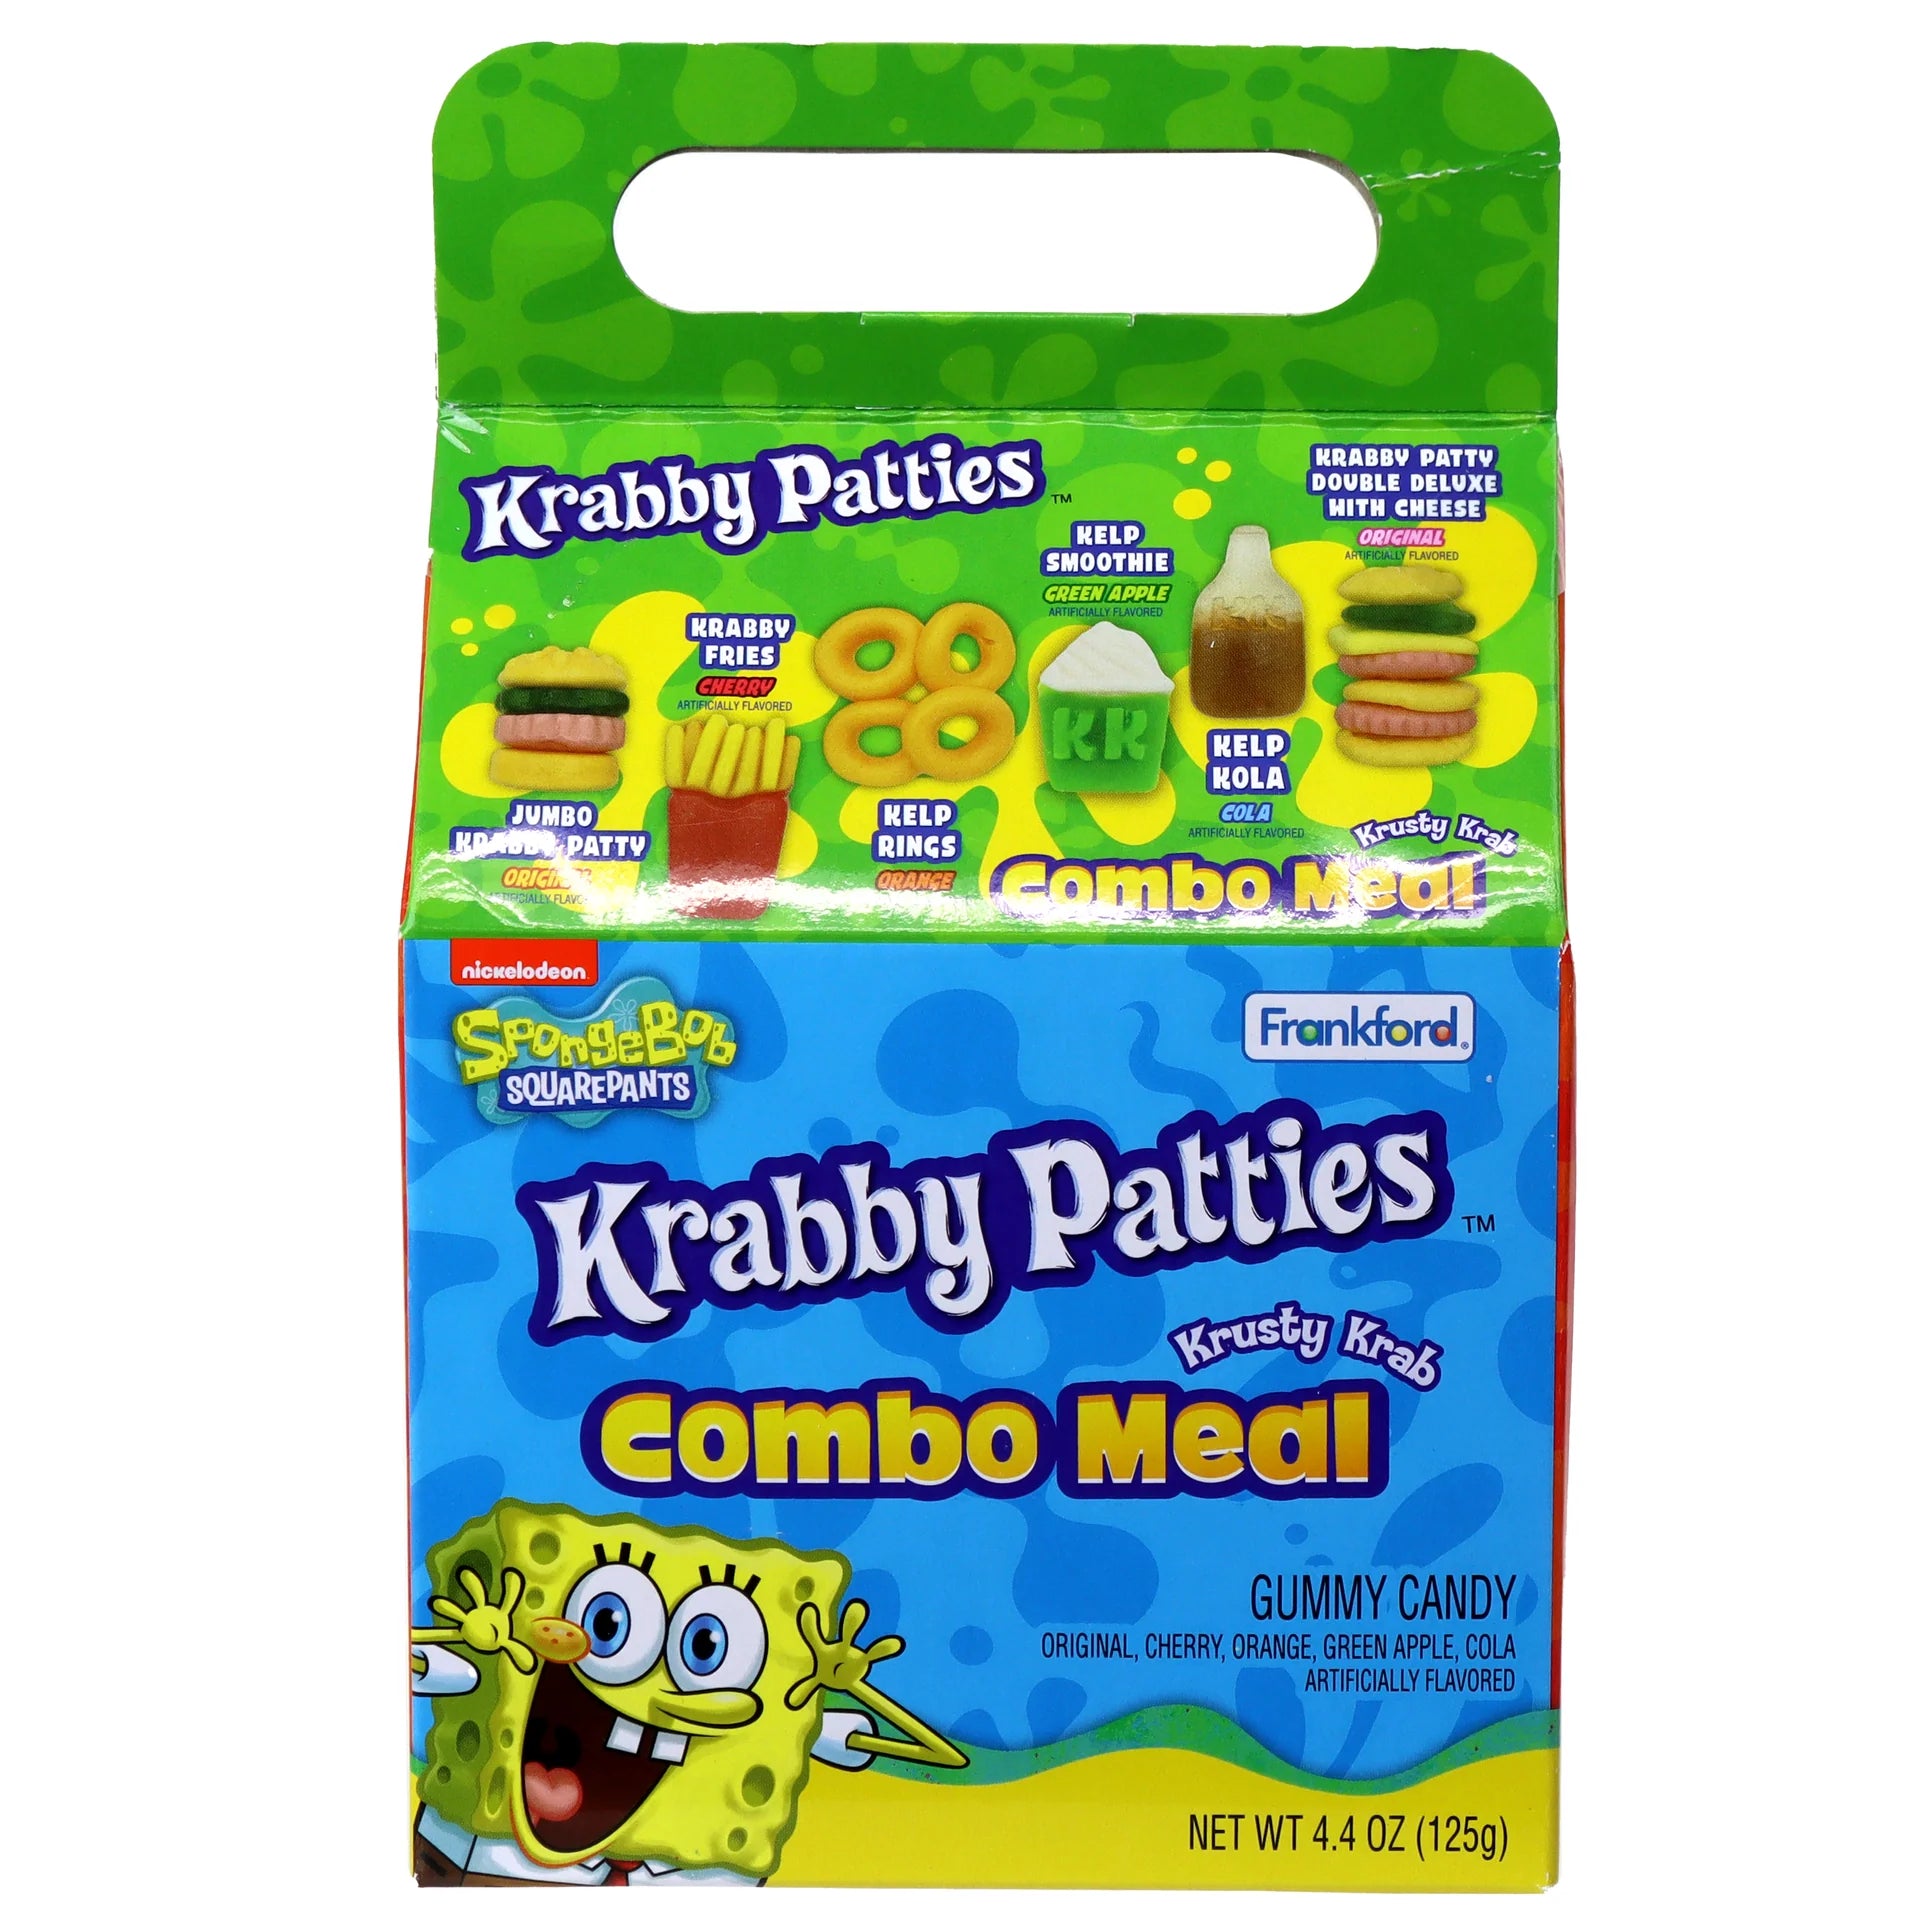 Frankford - Krabby Patties Krusty Krab Combo Meal - 125g